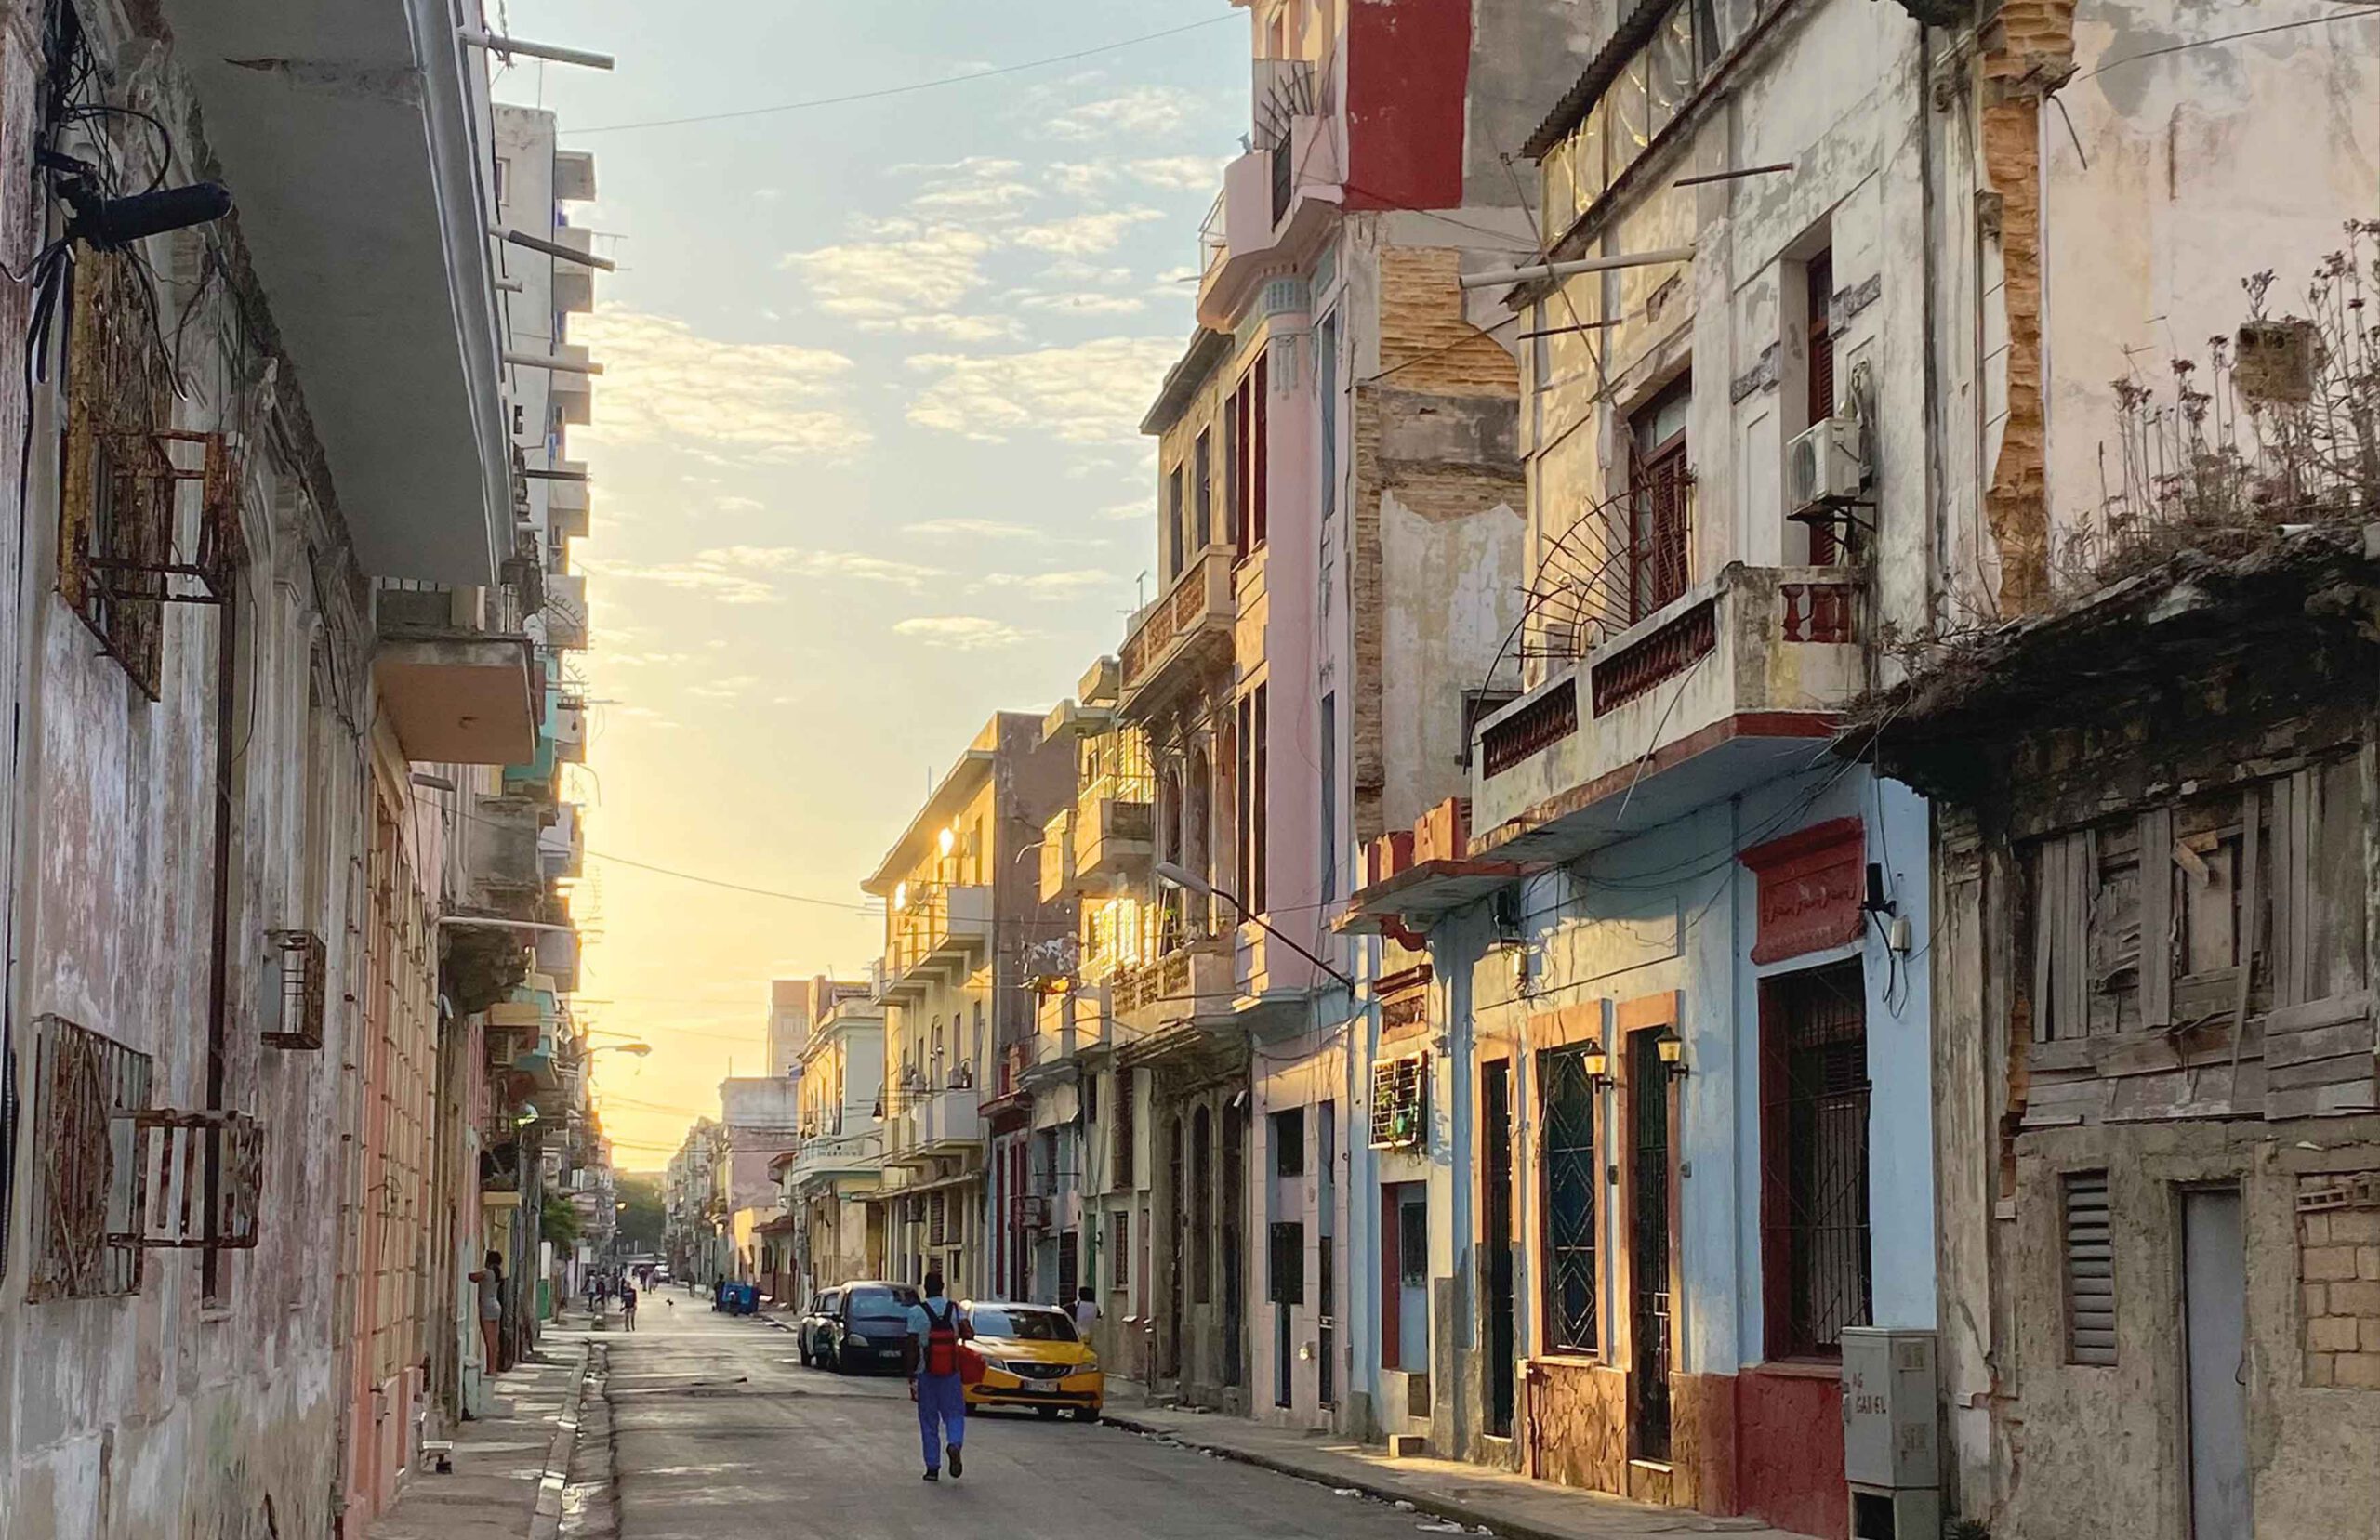 Di r heruntergekommene Teil von Havana, Kuba in den Morgenstunden.